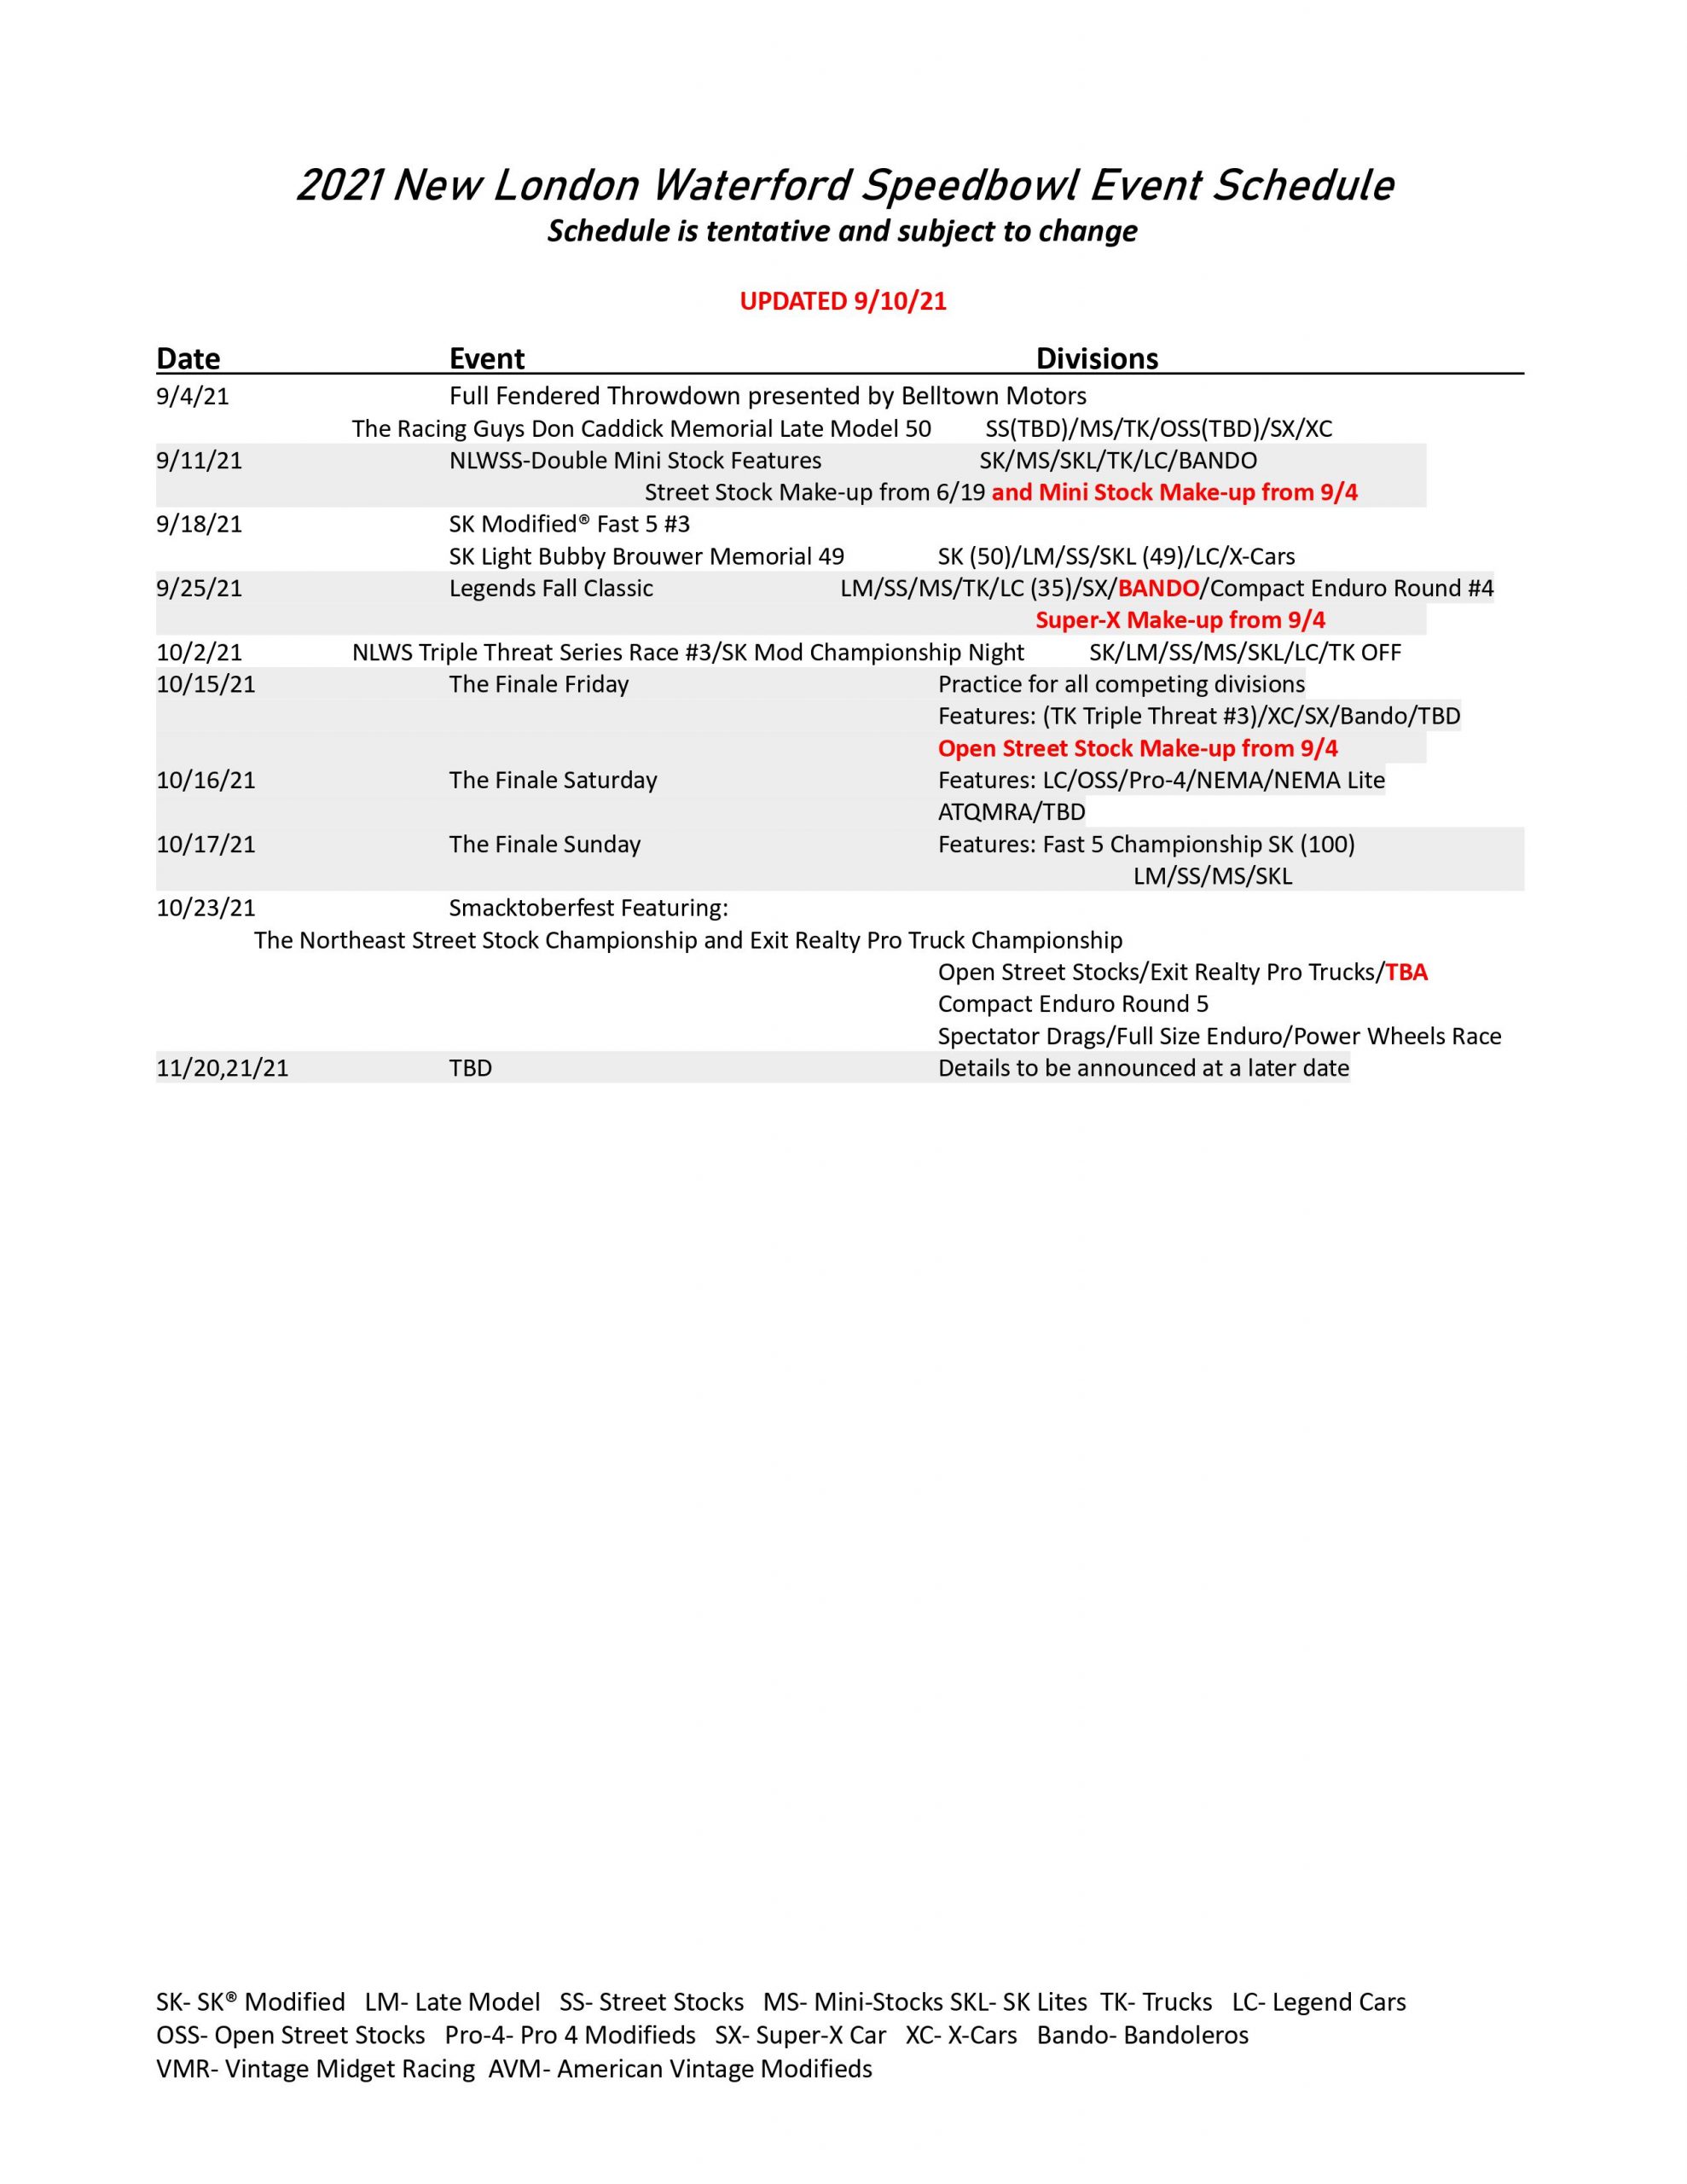 2021 New London Waterford Speedbowl Event Schedule (Updated)